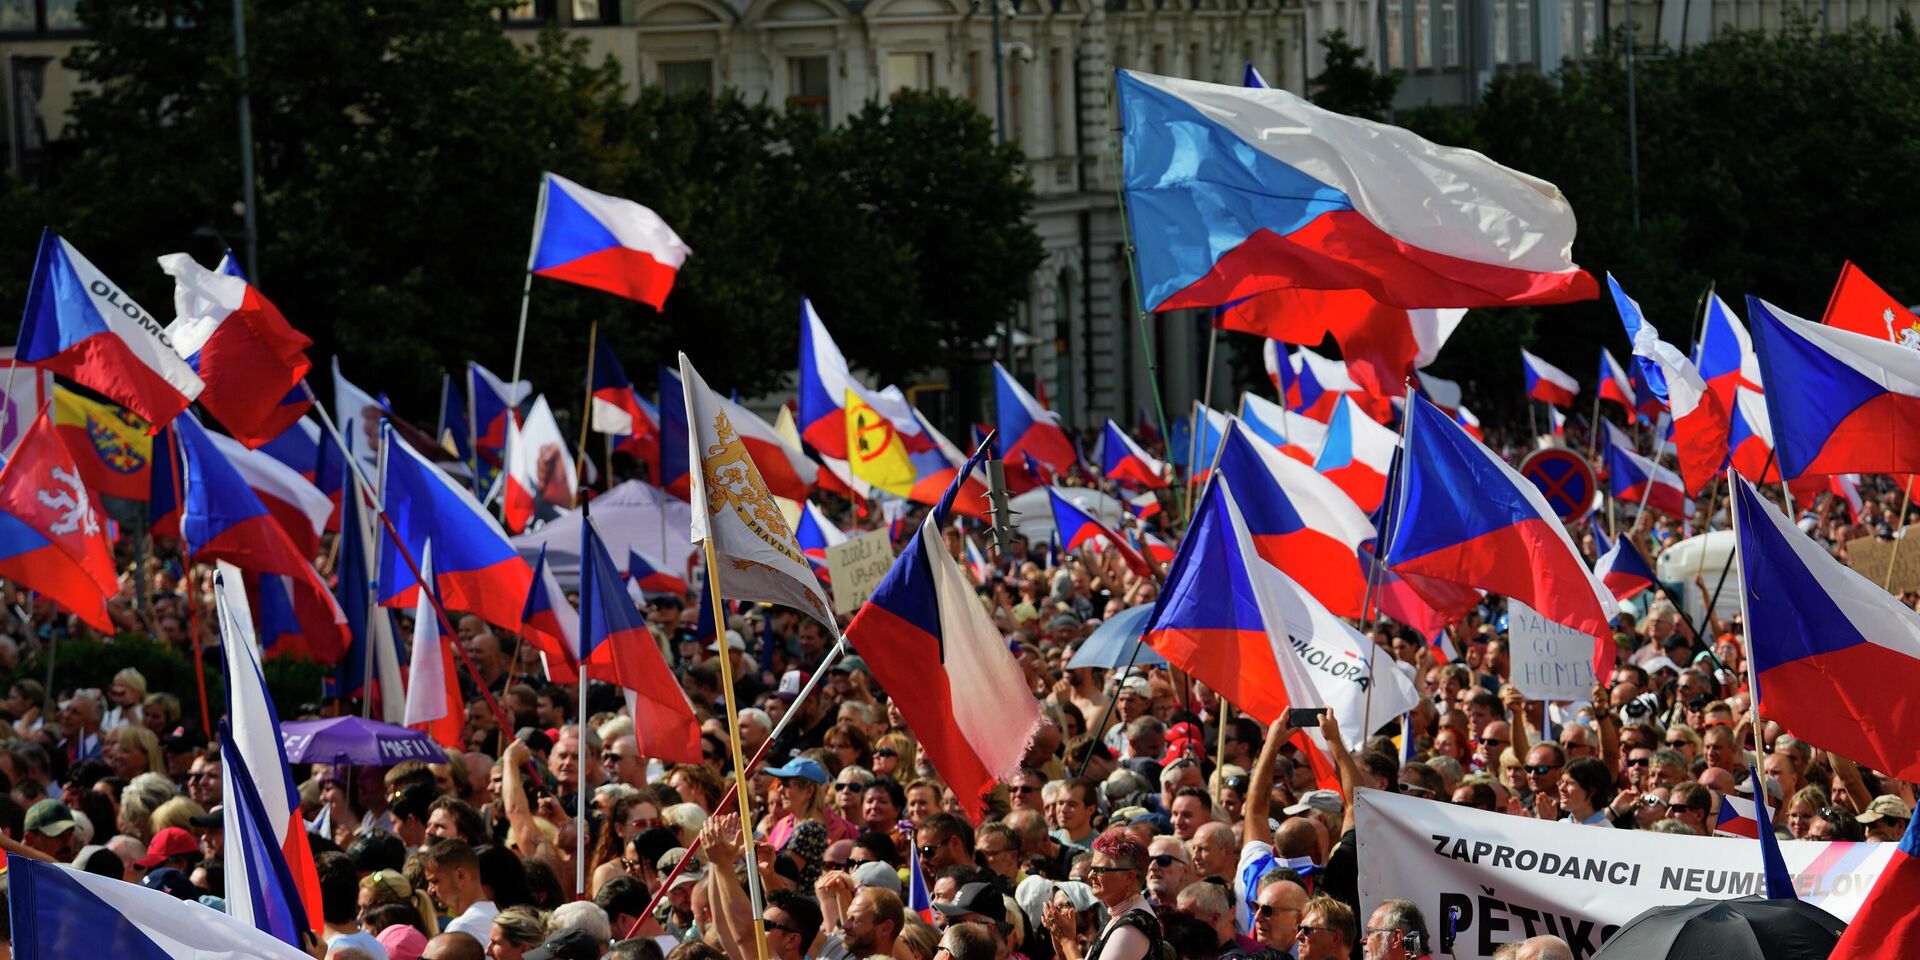 Антиправительственная демонстрация в Праге, Чехия. 3 сентября 2022 года. - ИноСМИ, 1920, 08.09.2022